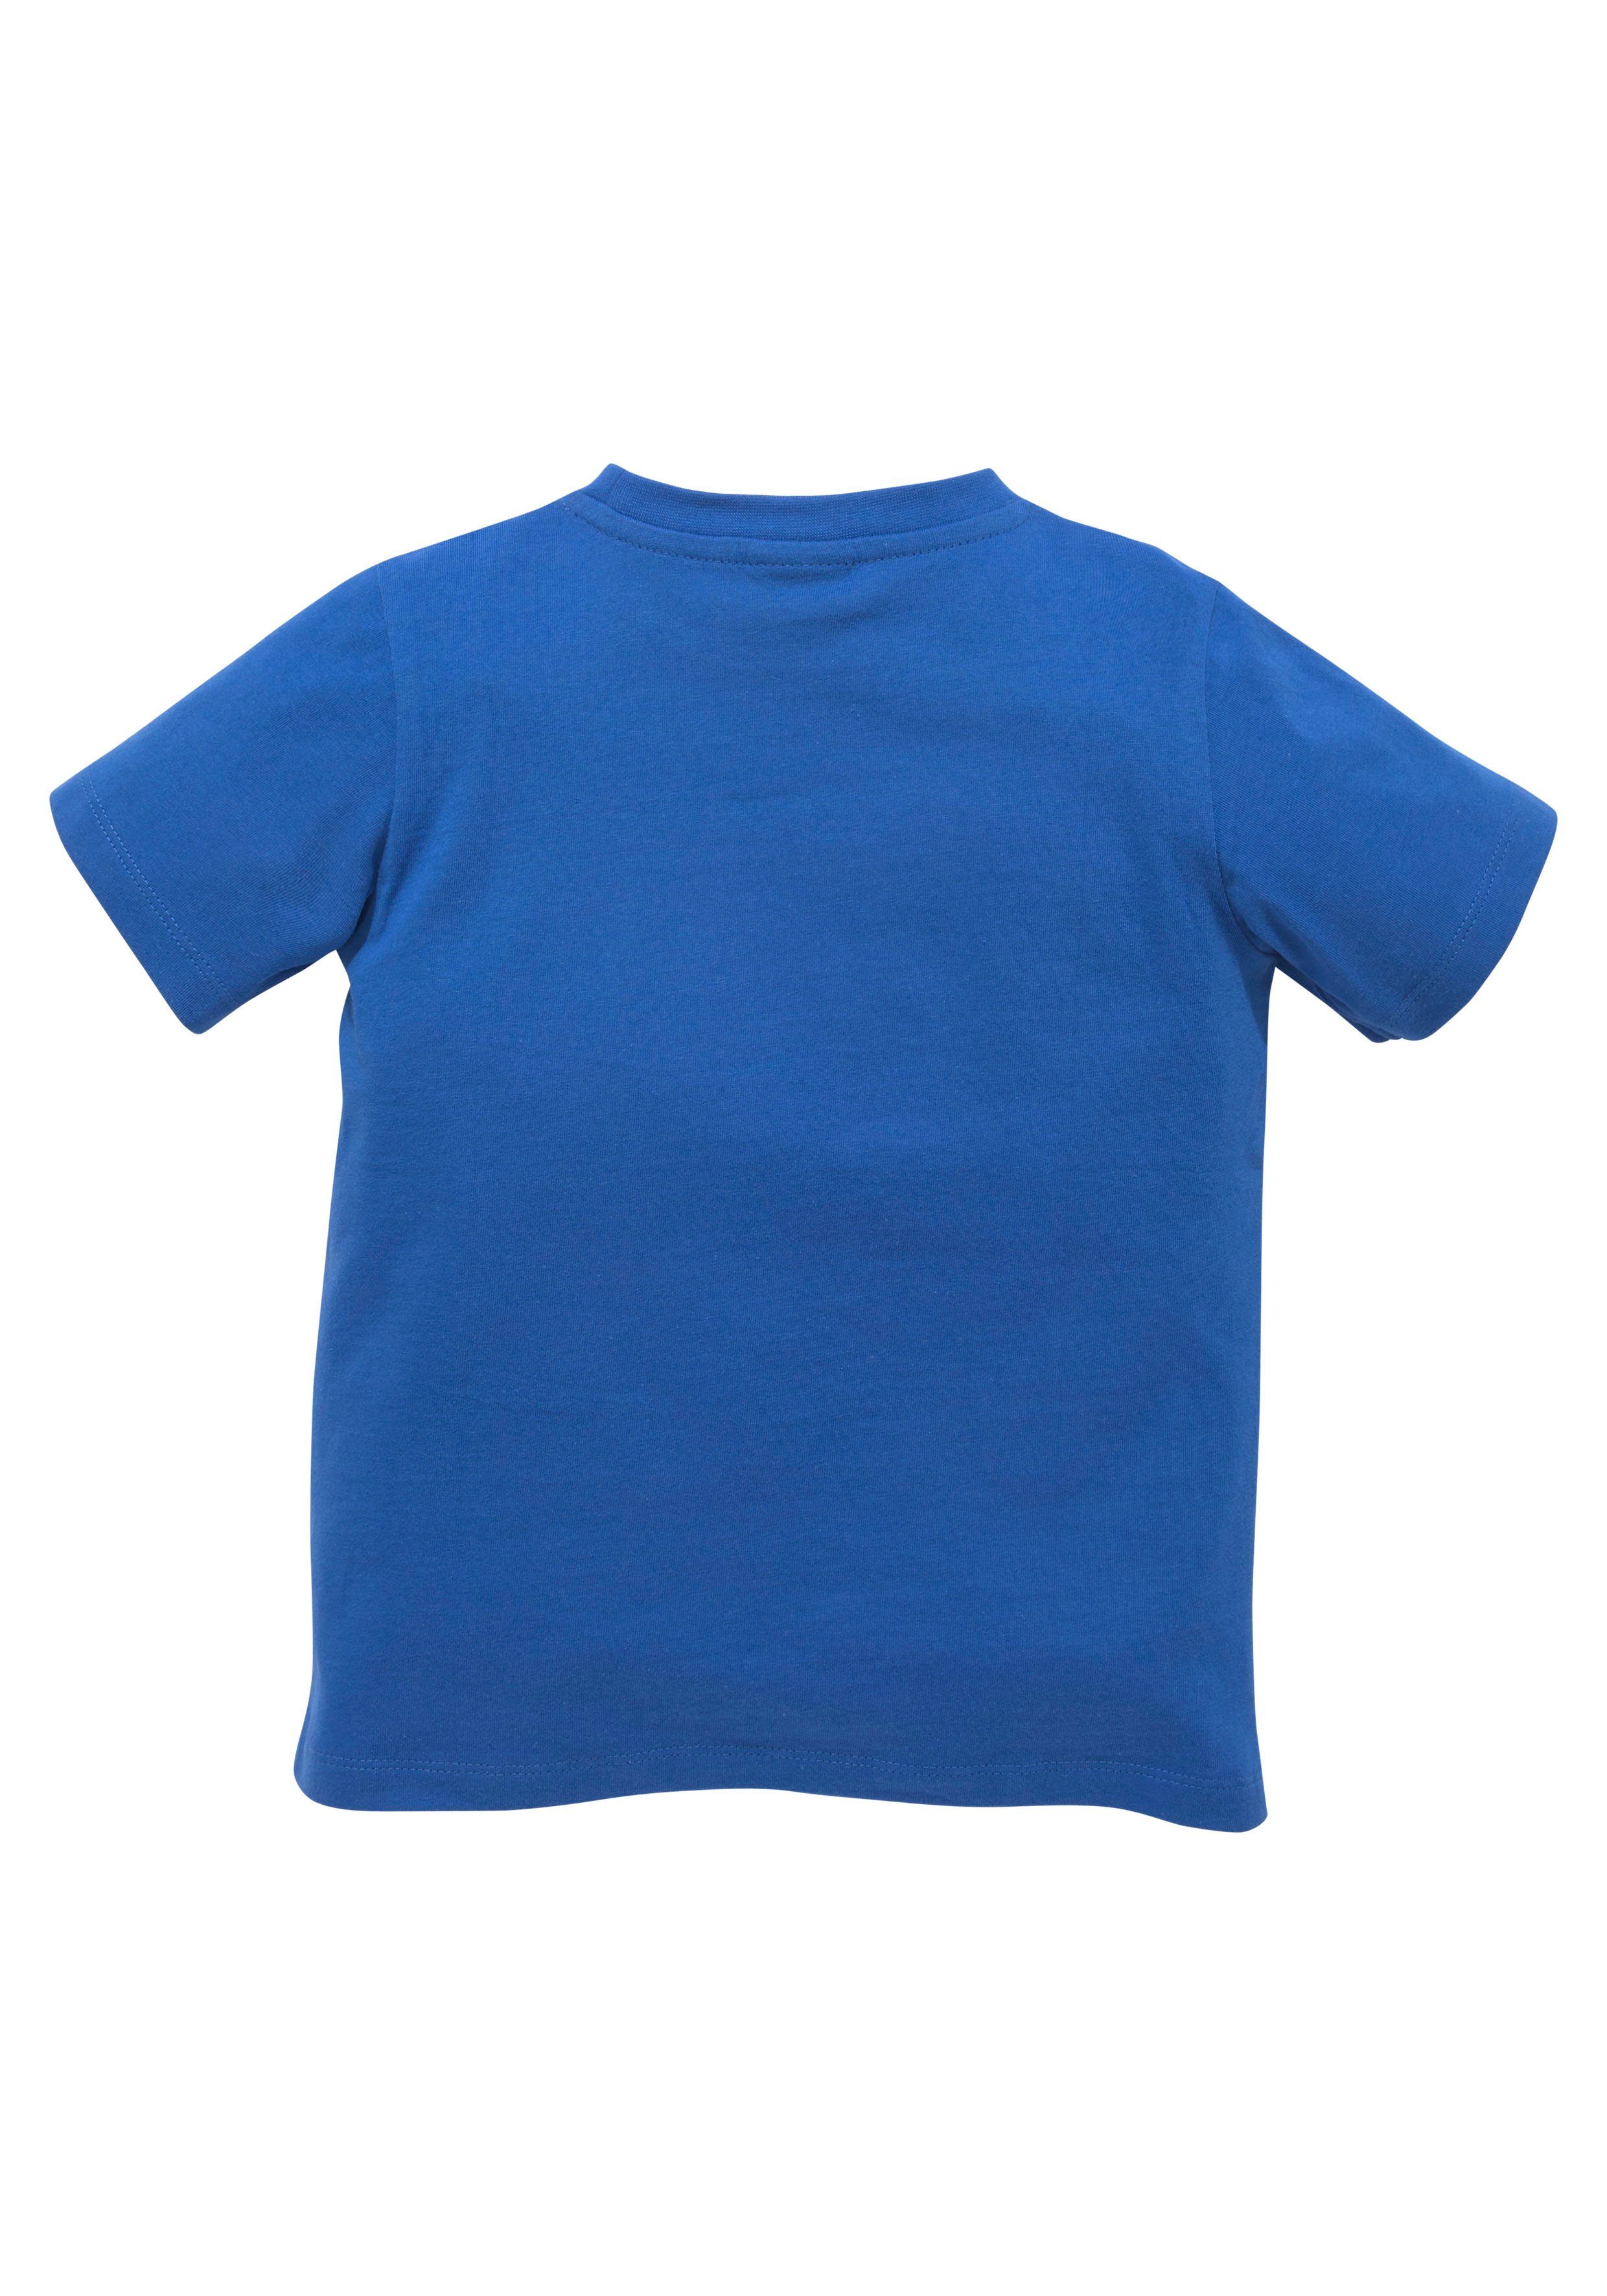 KIDSWORLD Spruch T-Shirt TOOOR,